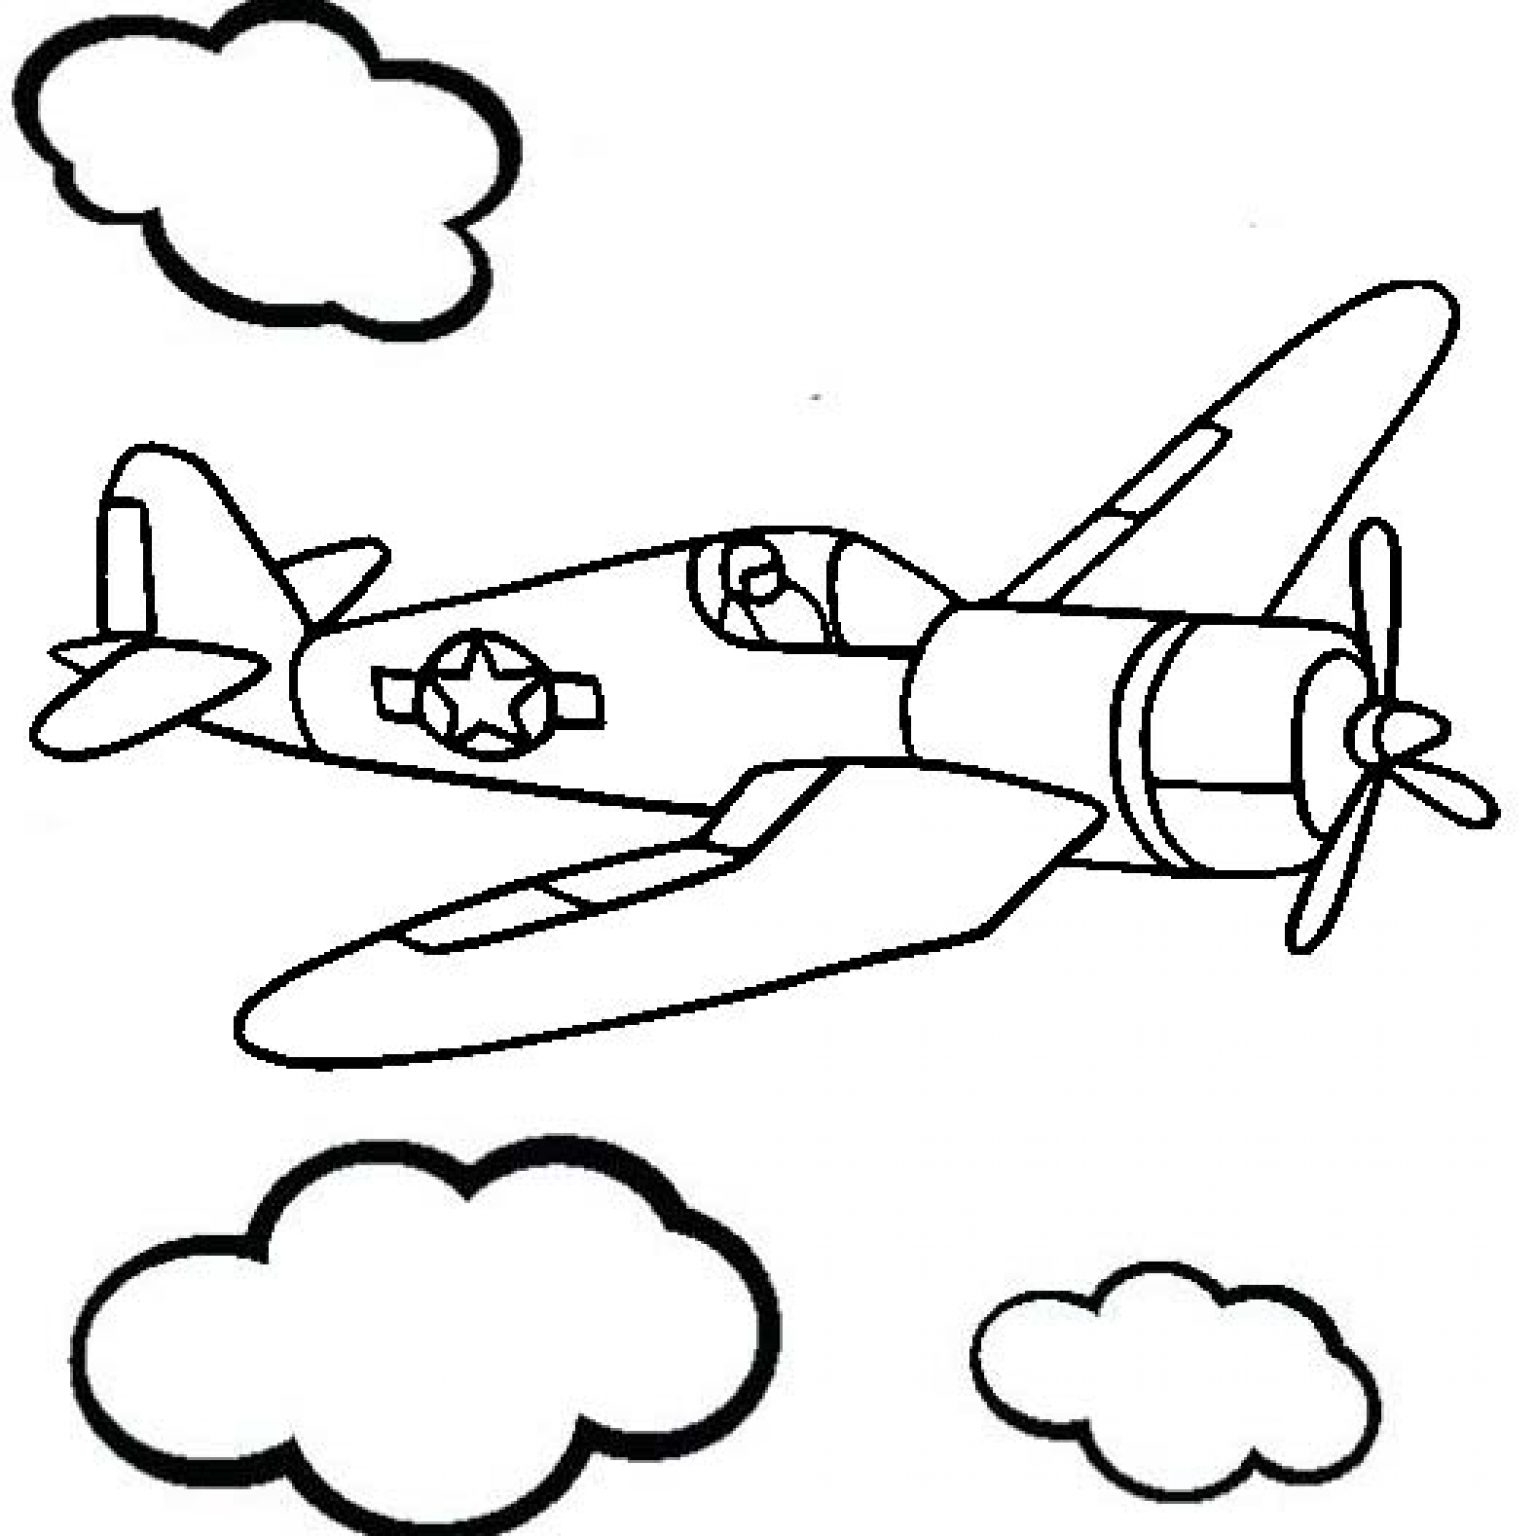 Распечатать раскраски воздушного транспорта: самолеты, вертолеты, ракеты и пр.